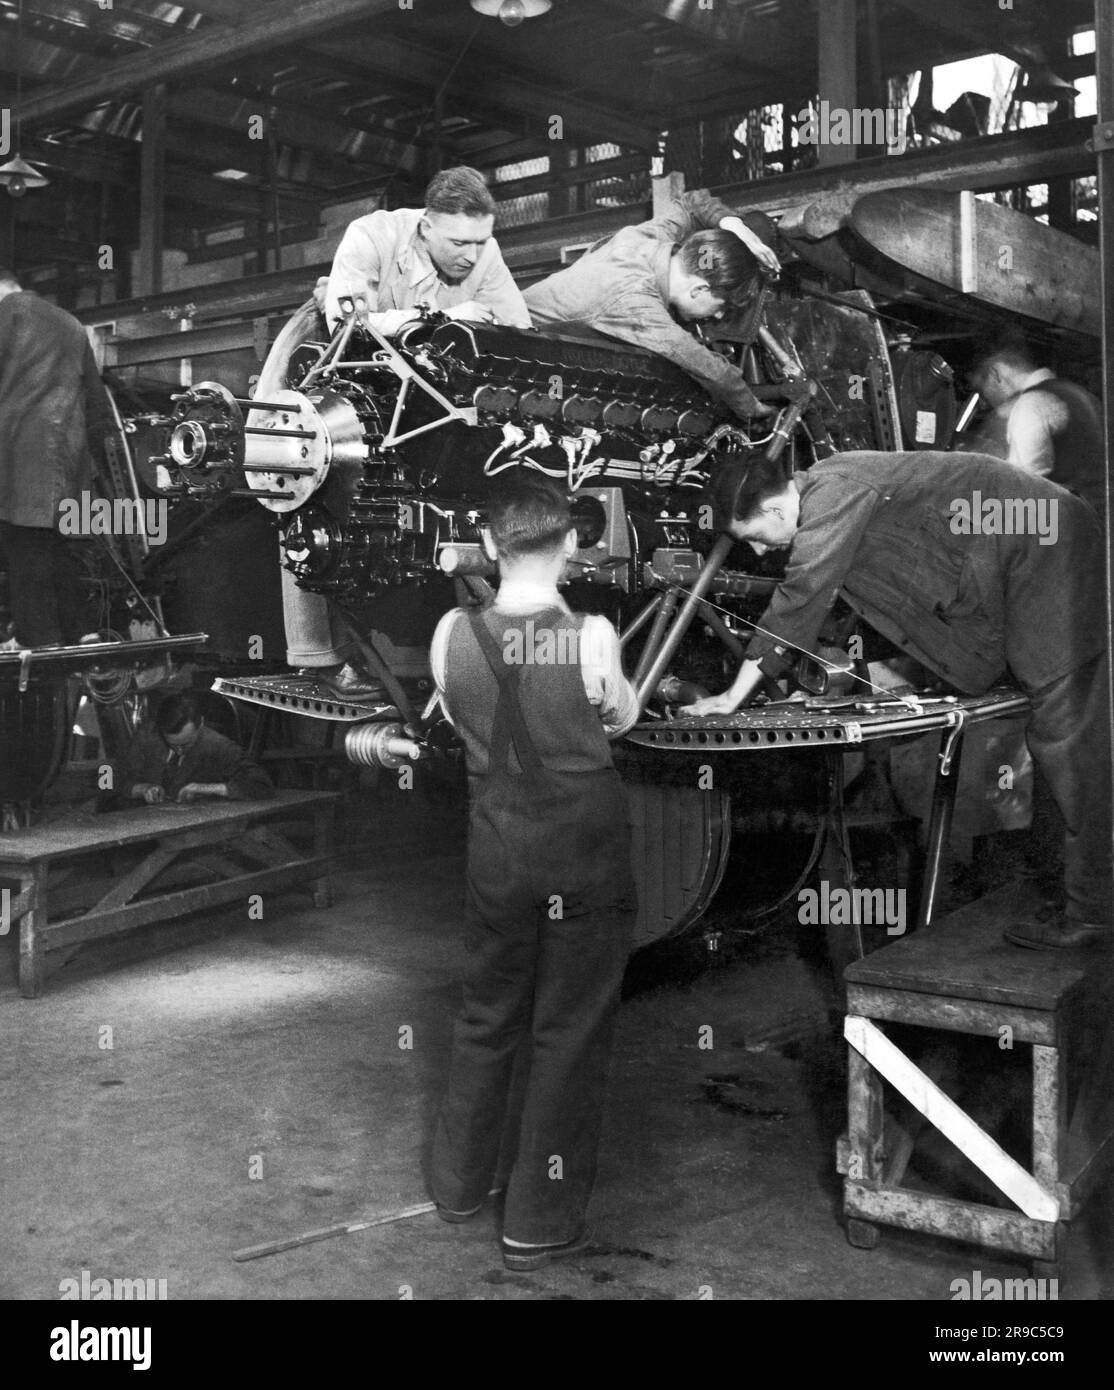 Londres, Angleterre: c. 1936 les travailleurs de Cricklewood de Handley page travaillent dans le mandat d'expansion du gouvernement pour tripler la taille de la Royal Air Force par 31 mars 1937. Ici, les ouvriers assemblent les supports du moteur. Banque D'Images